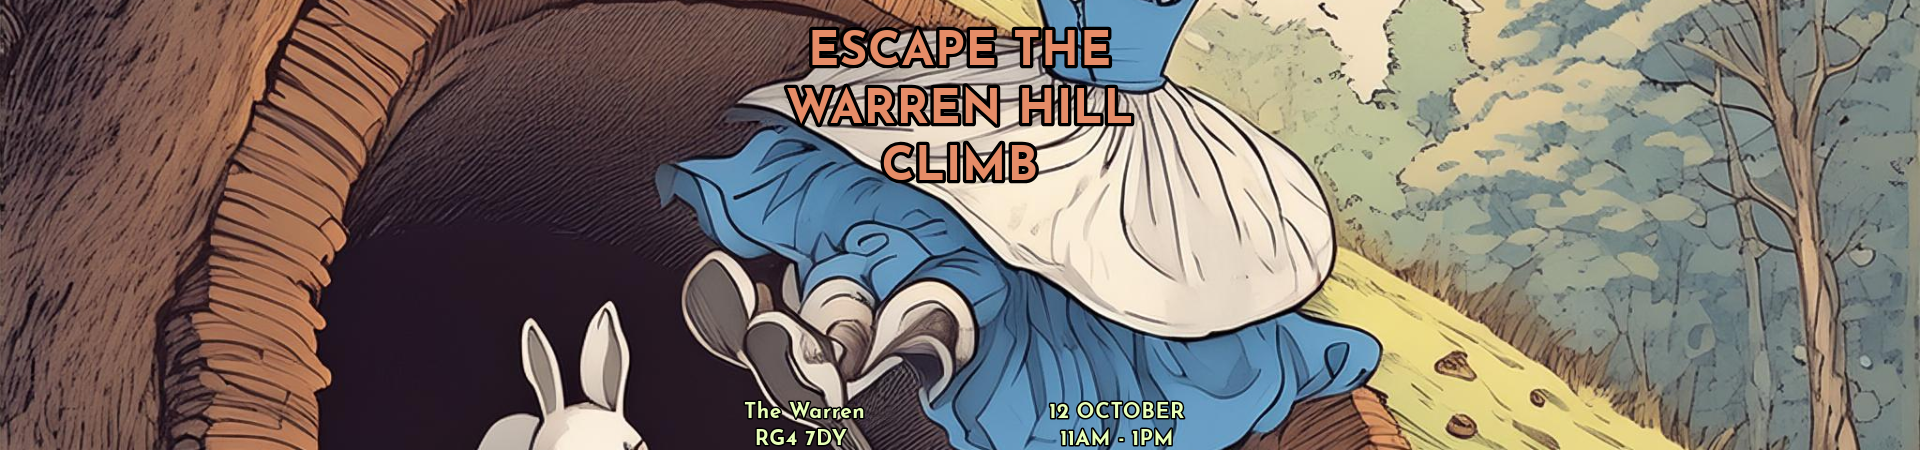 Escape the Warren Hill Climb